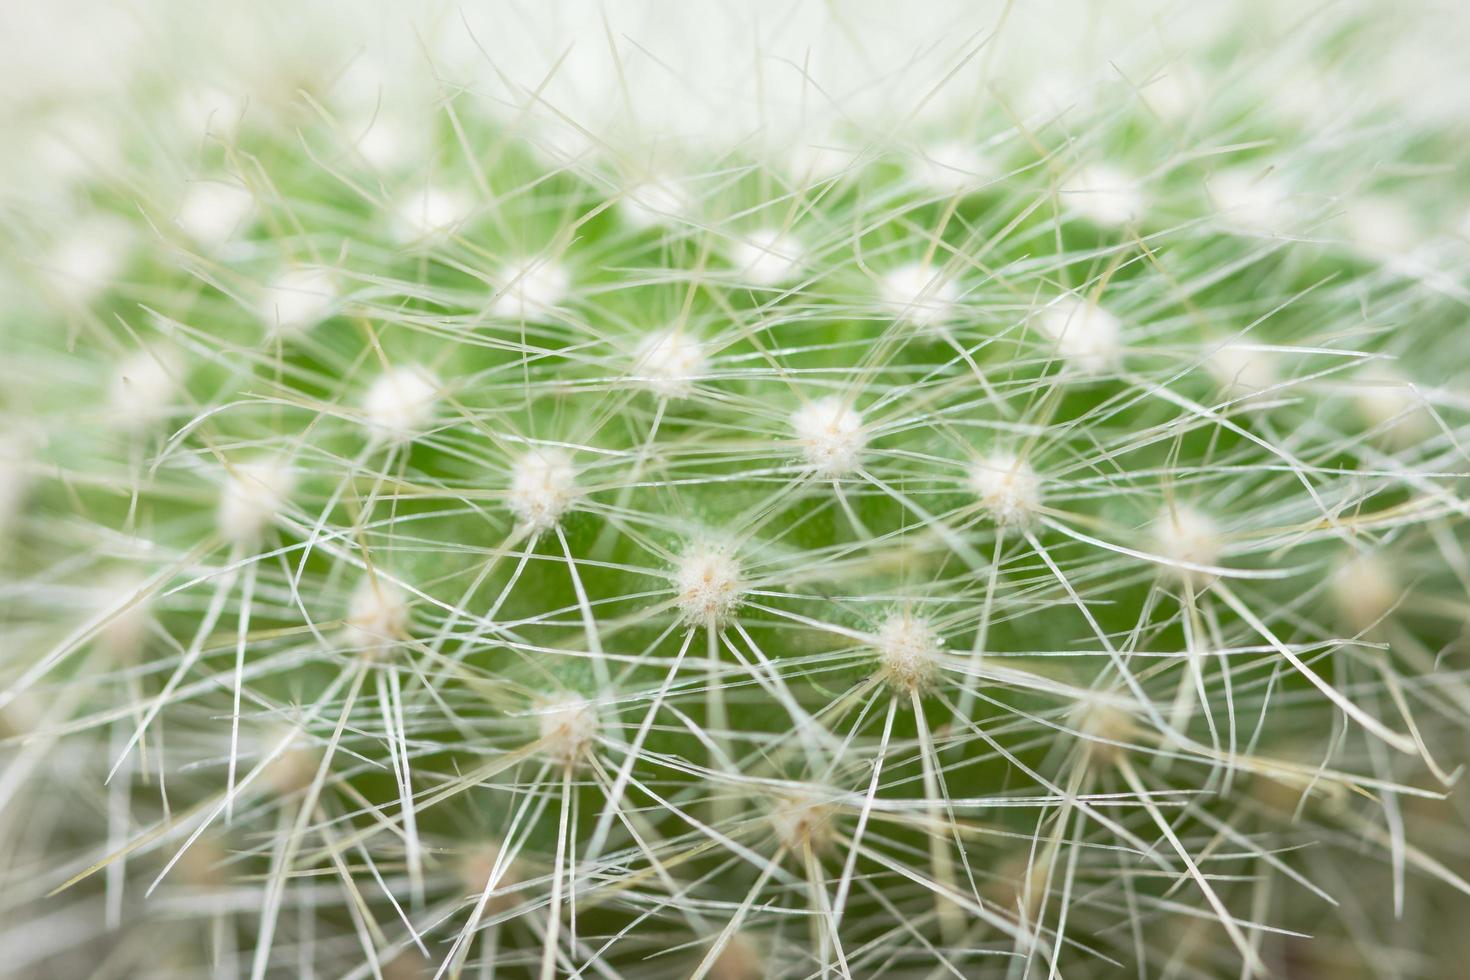 Green cactus close-up photo